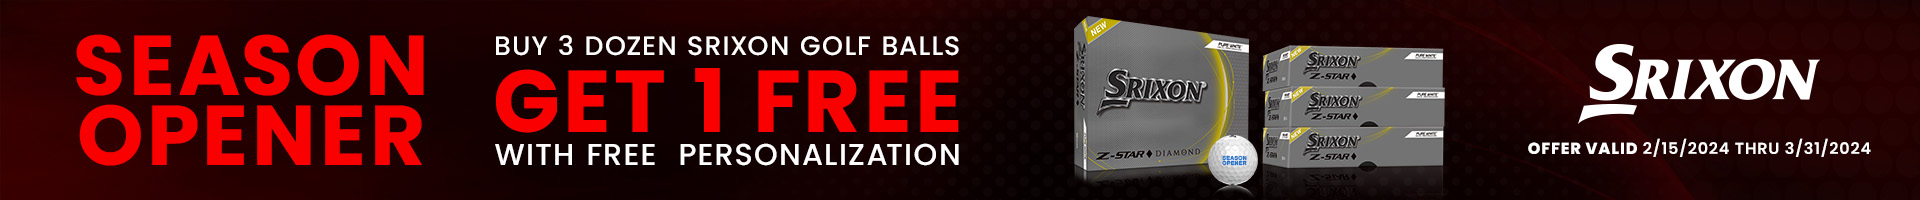 Buy 3 Dozen Get 1 Free Srixon Golf Balls